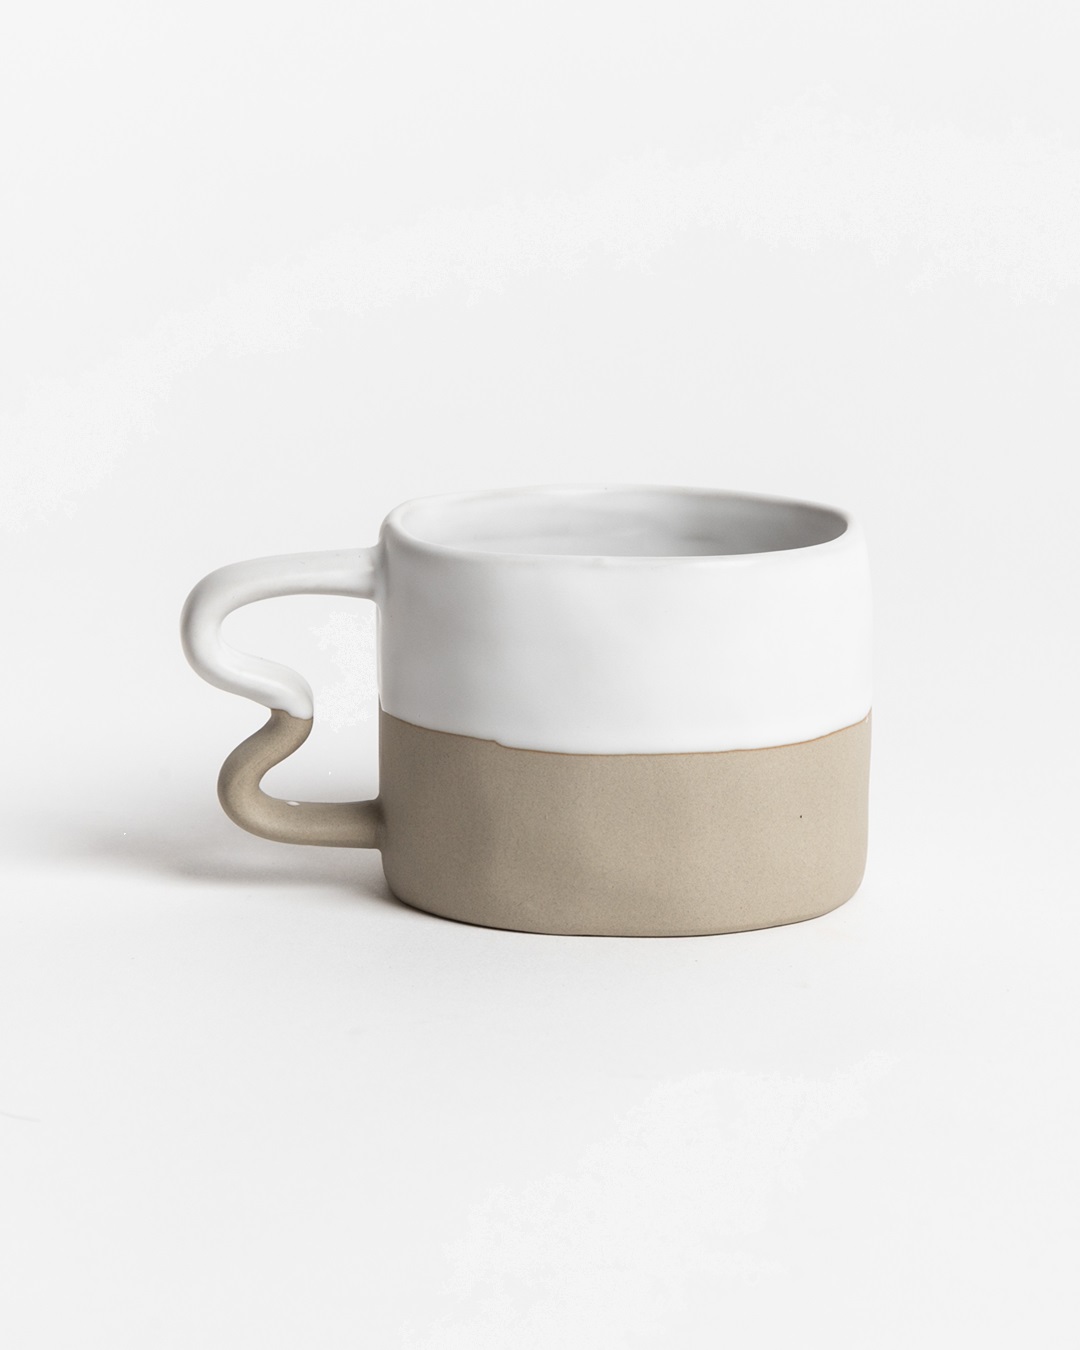 Benni mug white and sand with squiggle handle